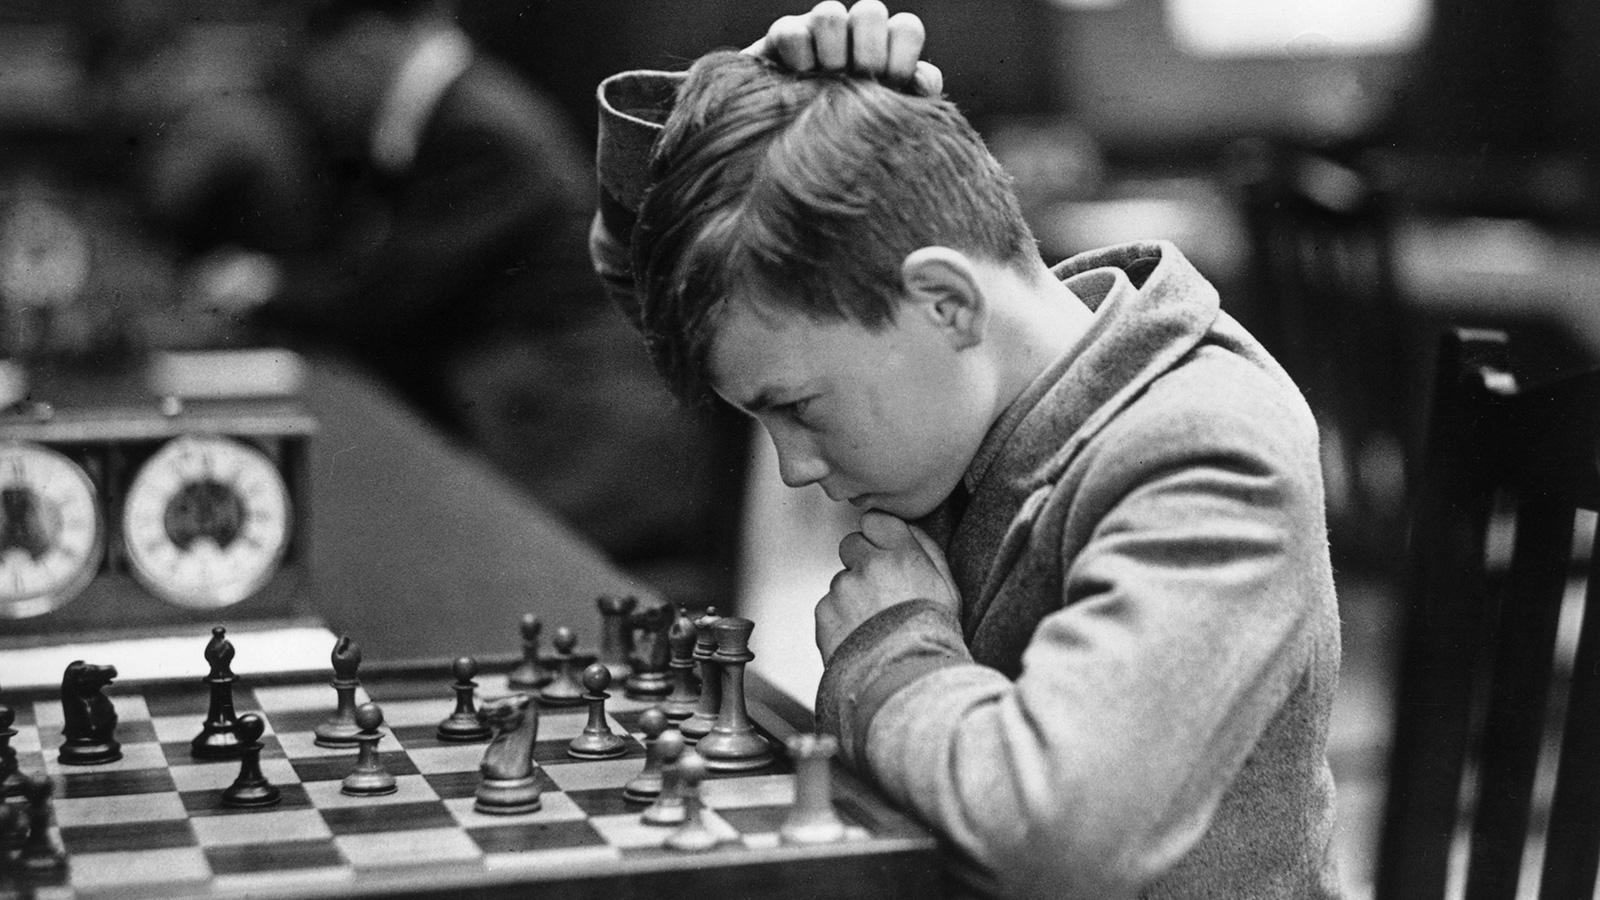 ‪الأطفال الذين يلعبون الشطرنج بشكل منتظم لديهم قدرة أكبر على التركيز مقارنة بالذين لا يمارسون هذه اللعبة‬ (غيتي)